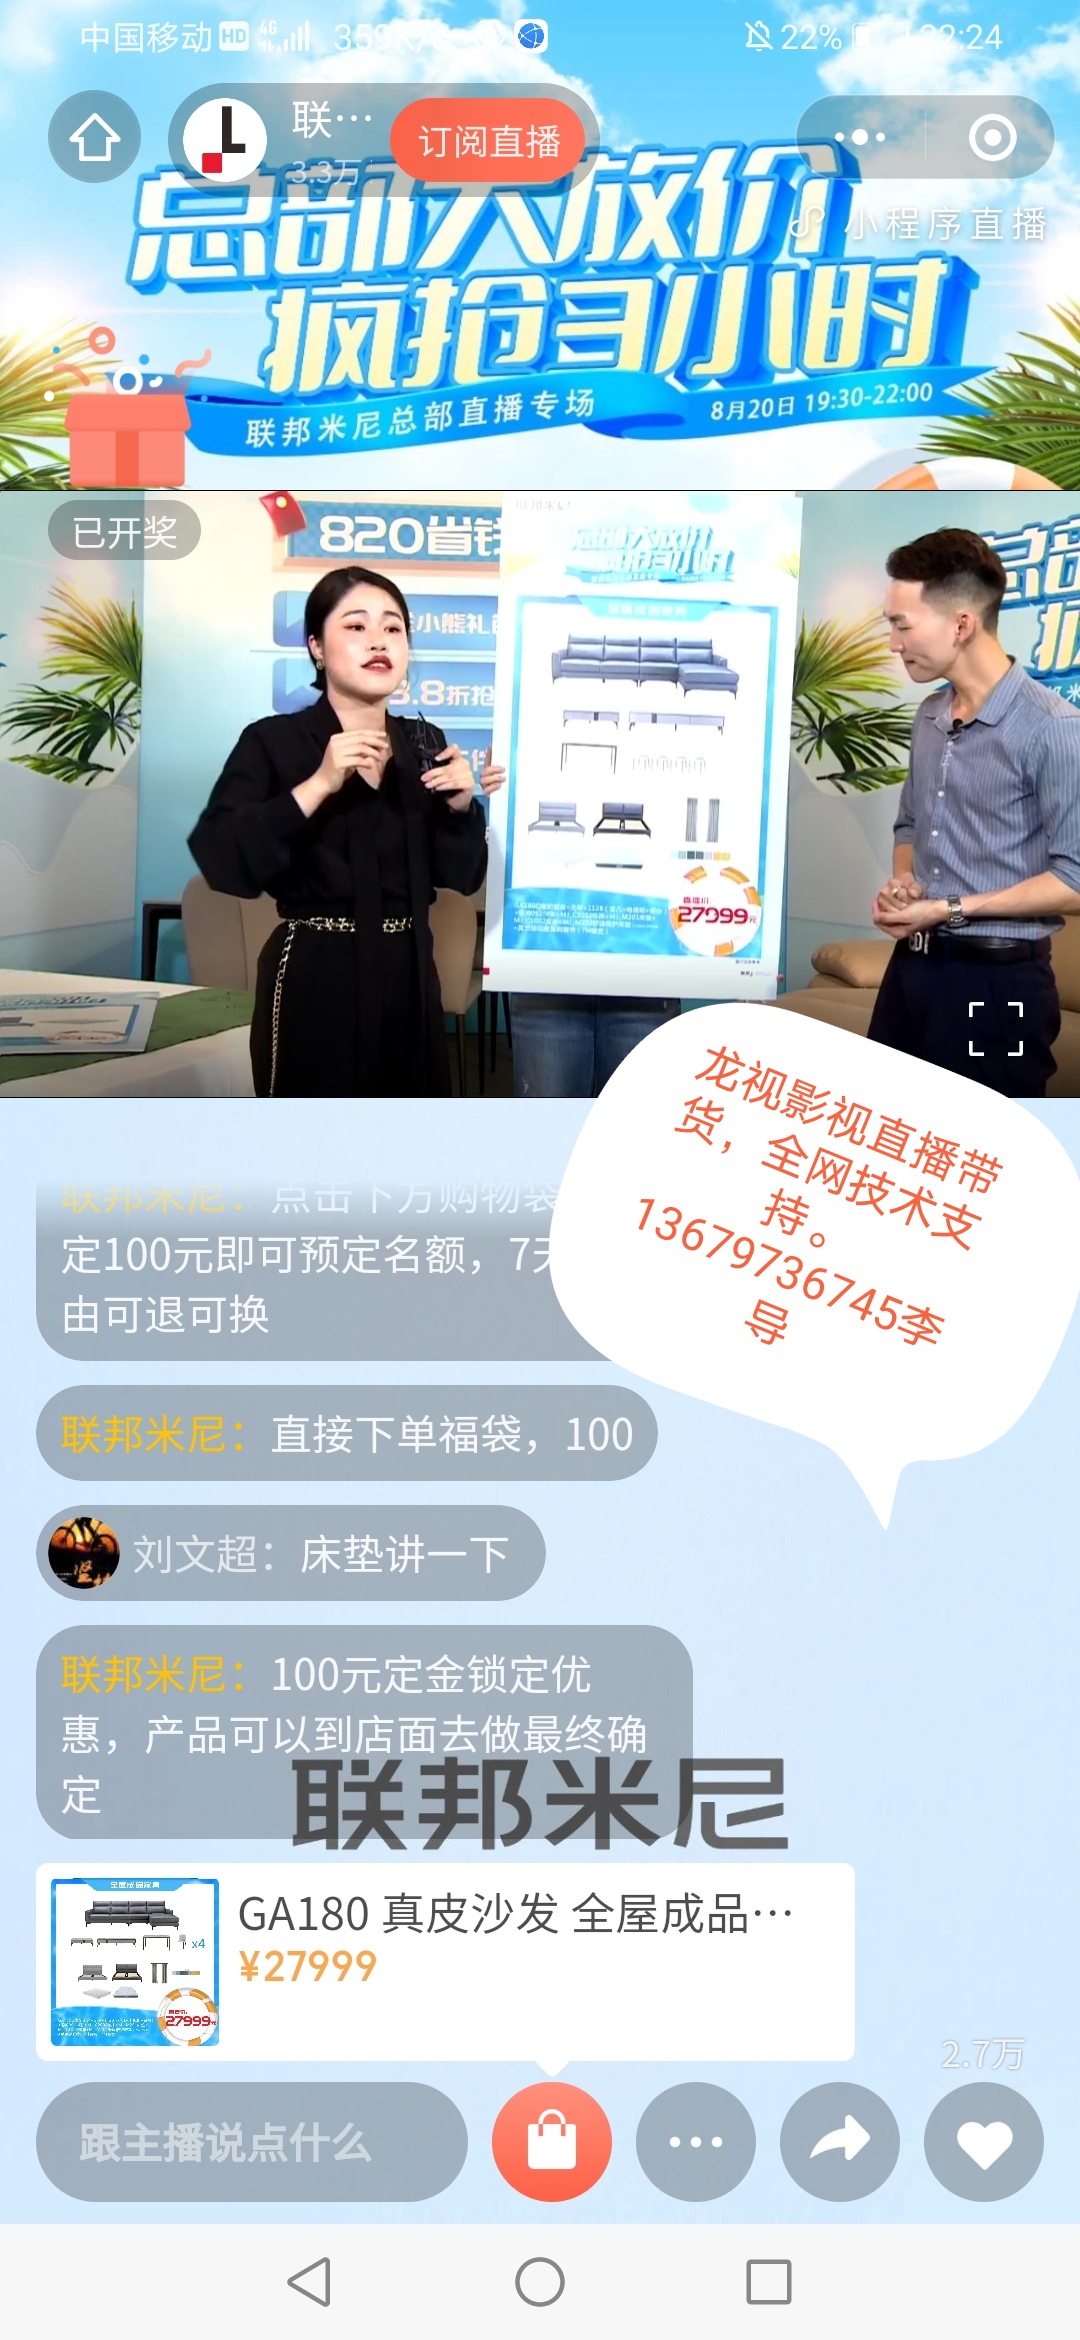 惠州现场网络直播-网络直播公司-网络直播技巧图片